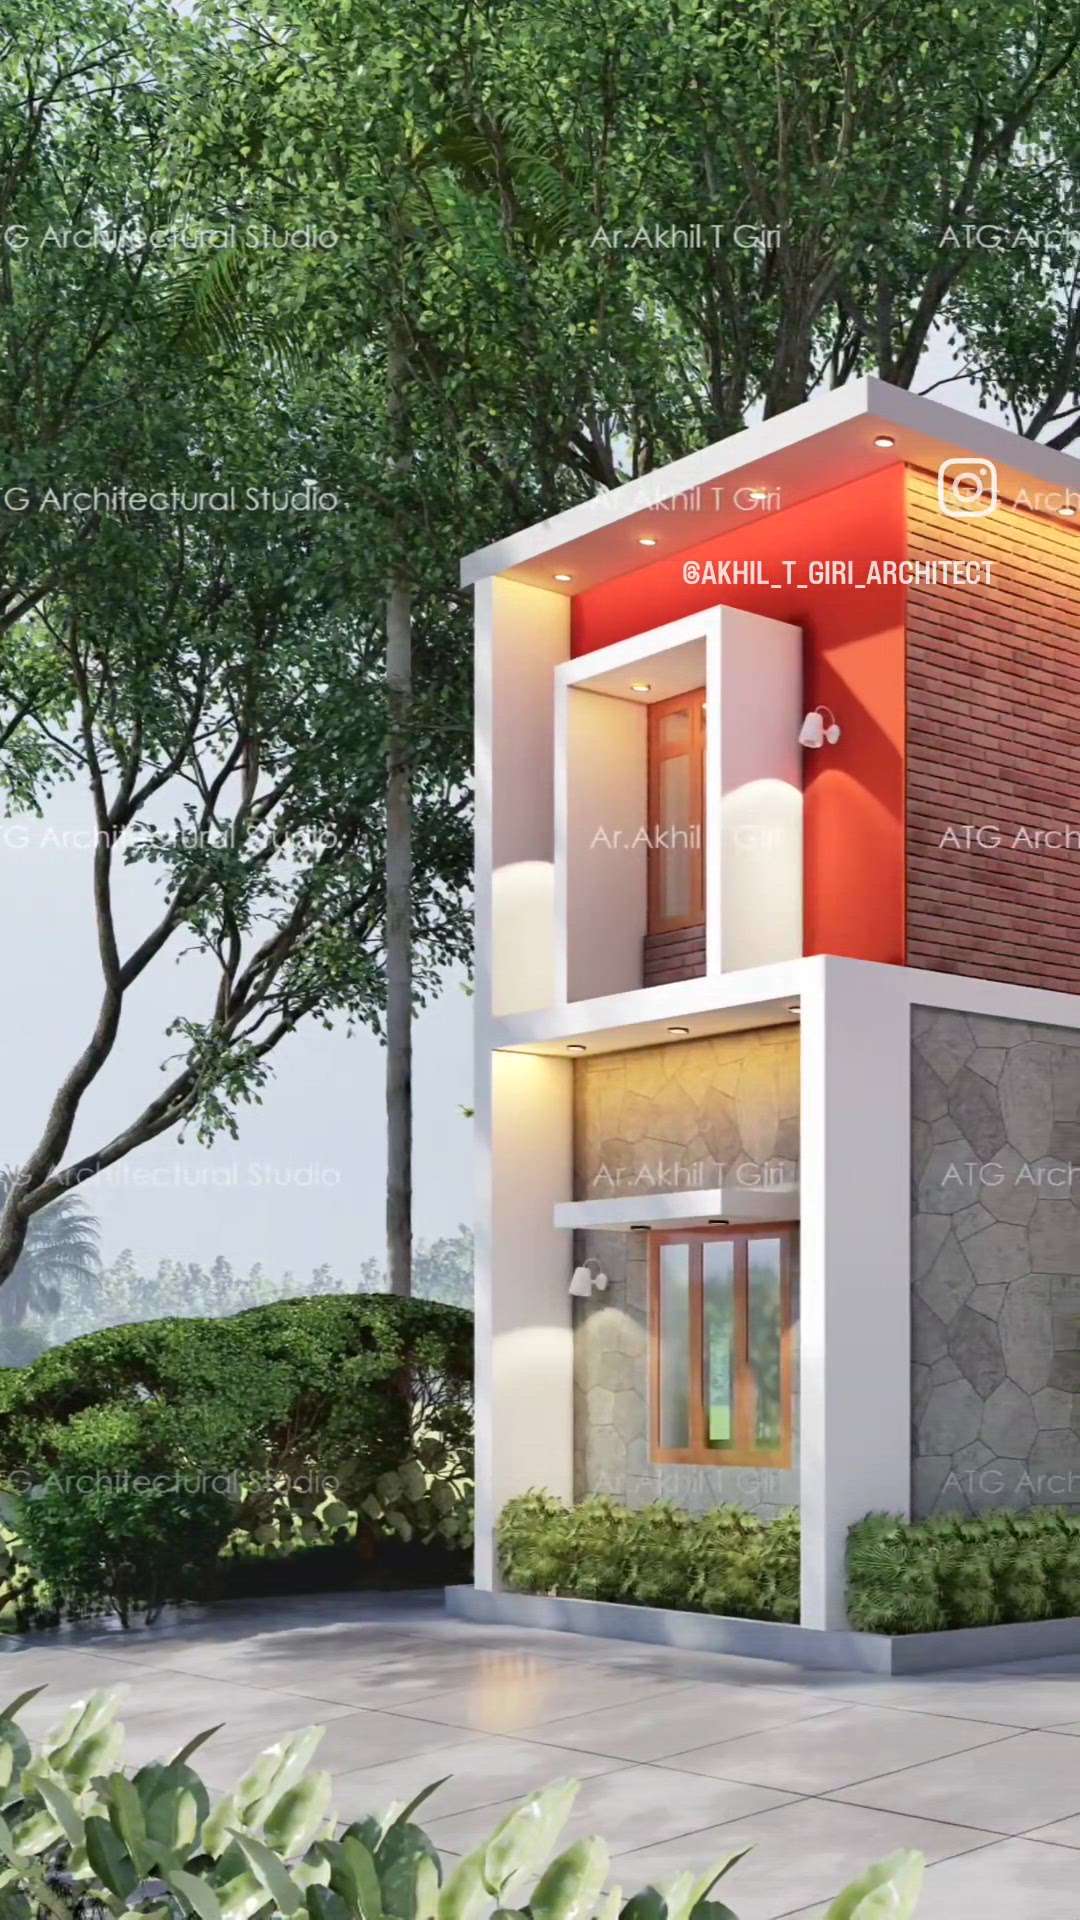 ഒരു കണ്ടമ്പററി വീട് ഡിസൈൻ ചെയ്തപ്പോൾ.....!
Finalised Design of the Proposed Residence for Maneesha- Pratheesh 
Client: @maneeshapretheesh
Area : 1400sq.ft
Location : Iringavoor, Malappuram, Kerala
The client requirement was to build a conventional contemporary style house with in a linear plot.
..
..
#budgetedhomes#kerala_architecture
#Home🏡 #exteriordesign #architects_of_malappuram 
#contemporarydesign#kolo #HomeDesign #HomeDecor 
#construction#keralabuildingplanners#architecture ##tropical_house_design #kolo #Homedesign#kerala_architecture #keralabuildingplanners #keralahomesdesign